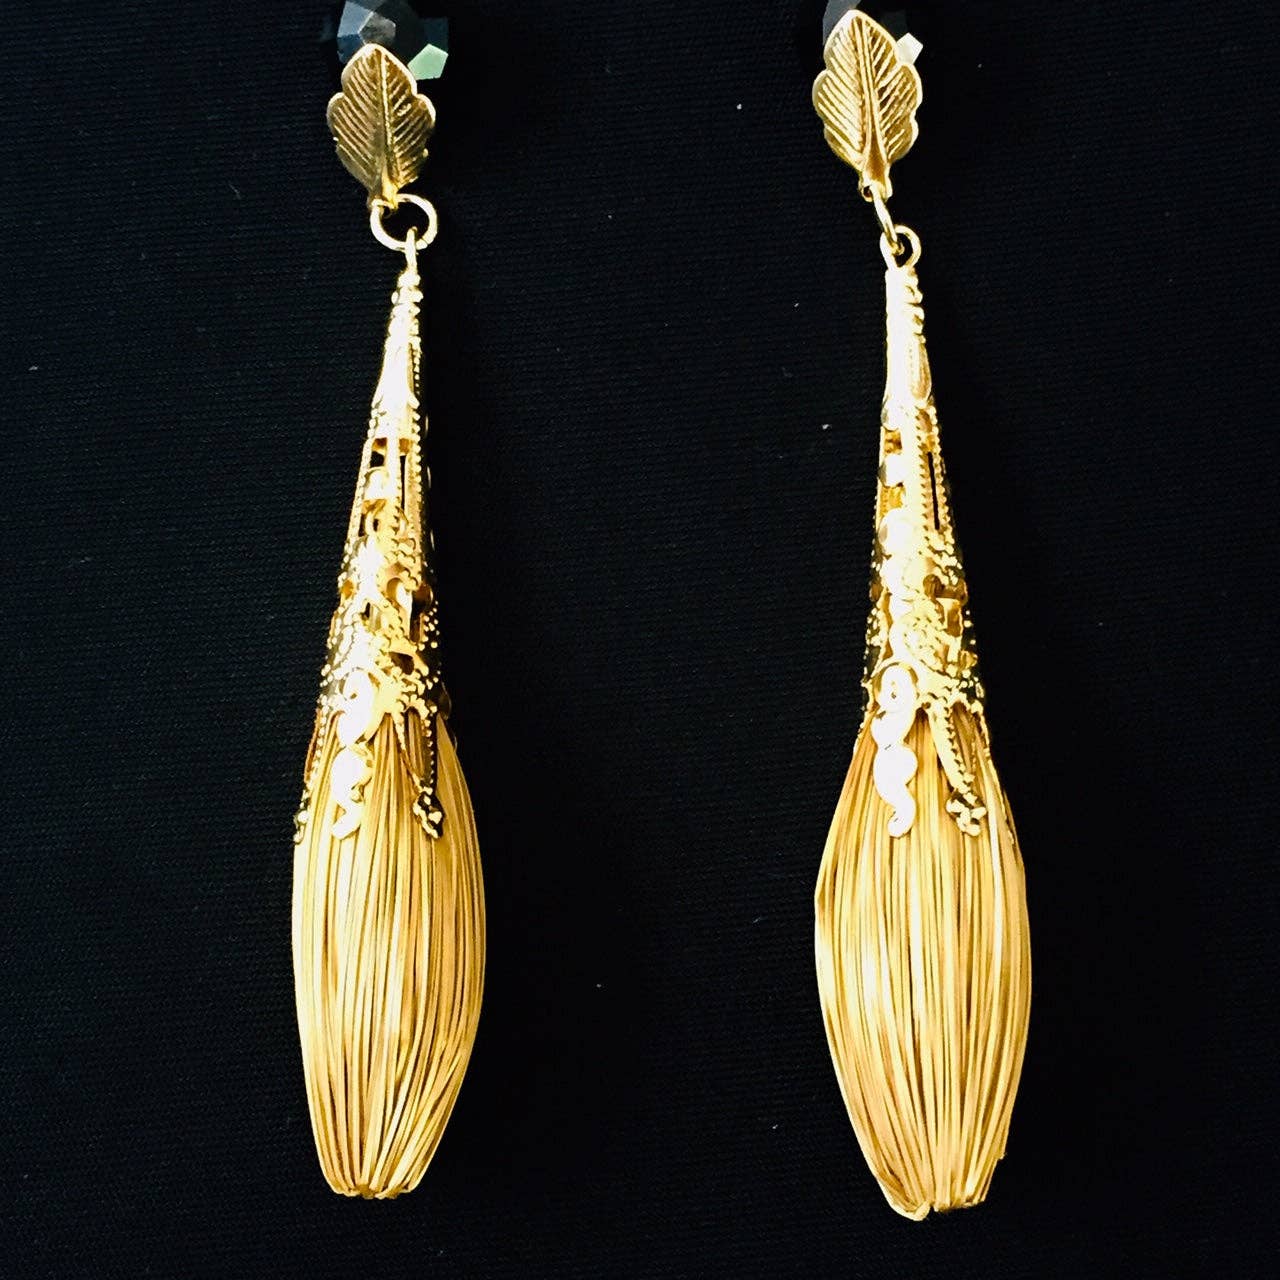 Paar handgefertigte Ohrringe aus pflanzlicher Goldfaser mit vergoldeten Details